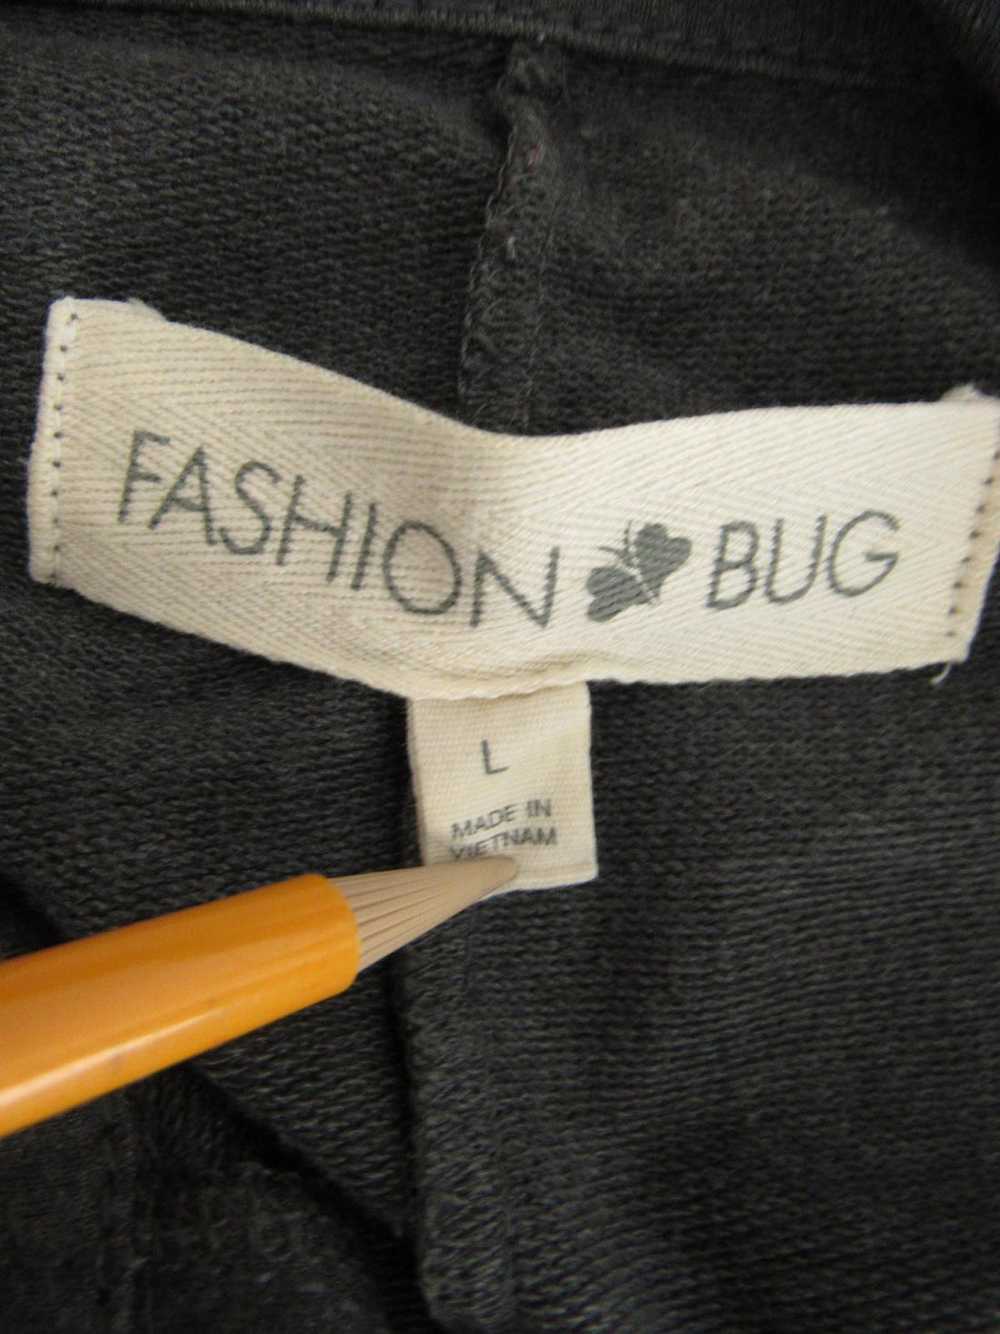 Fashion Bug Utility Jacket - image 3